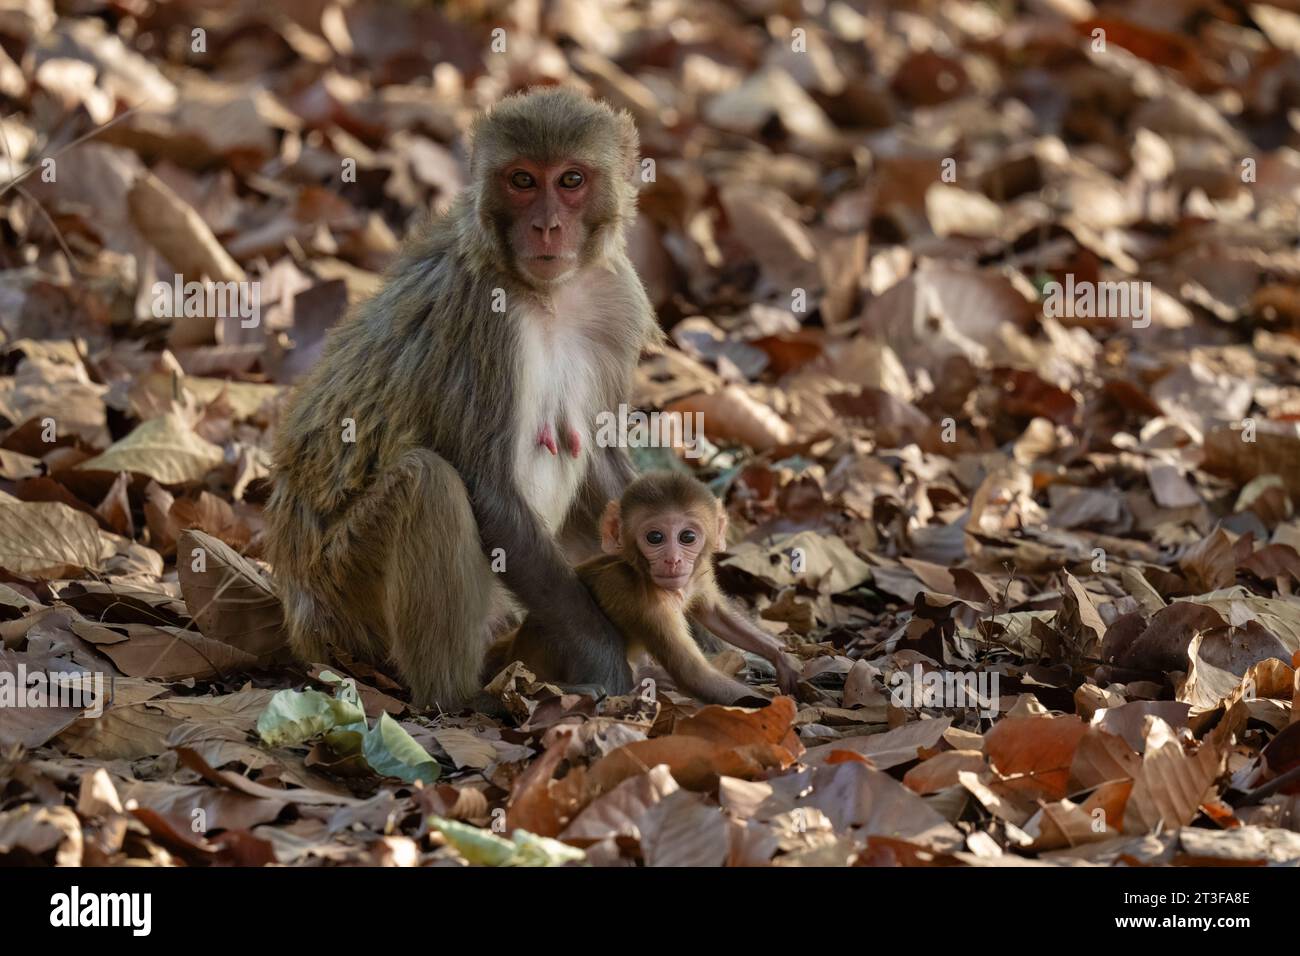 Rhesus macaque, Macaca mulatta, Bandhavgarh National Park, India. Stock Photo